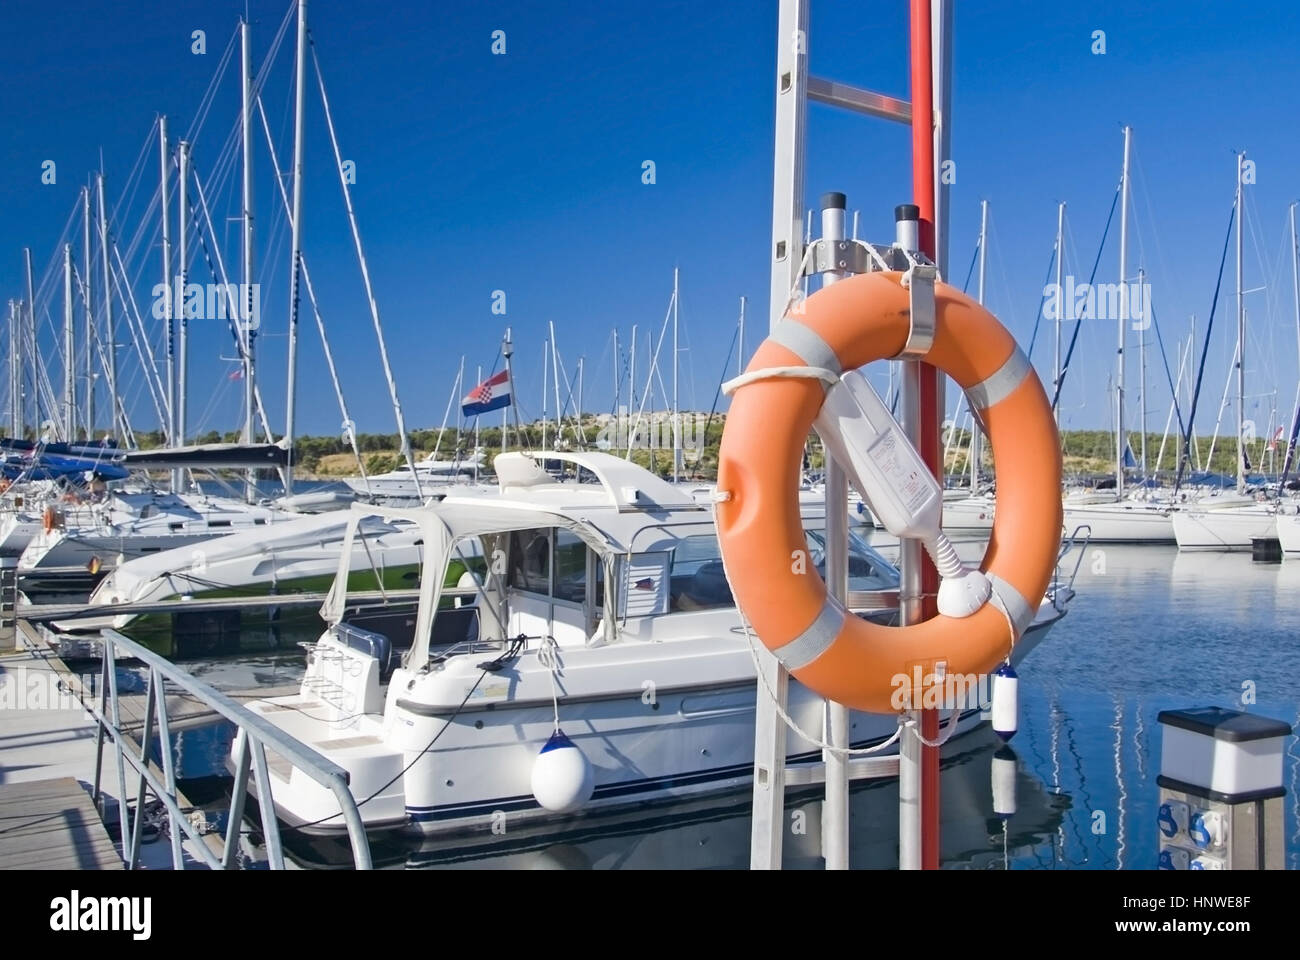 Segelboote am Hafen, Sibenik, Dalmatien, Kroatien - sailboats at port, Croatia Stock Photo